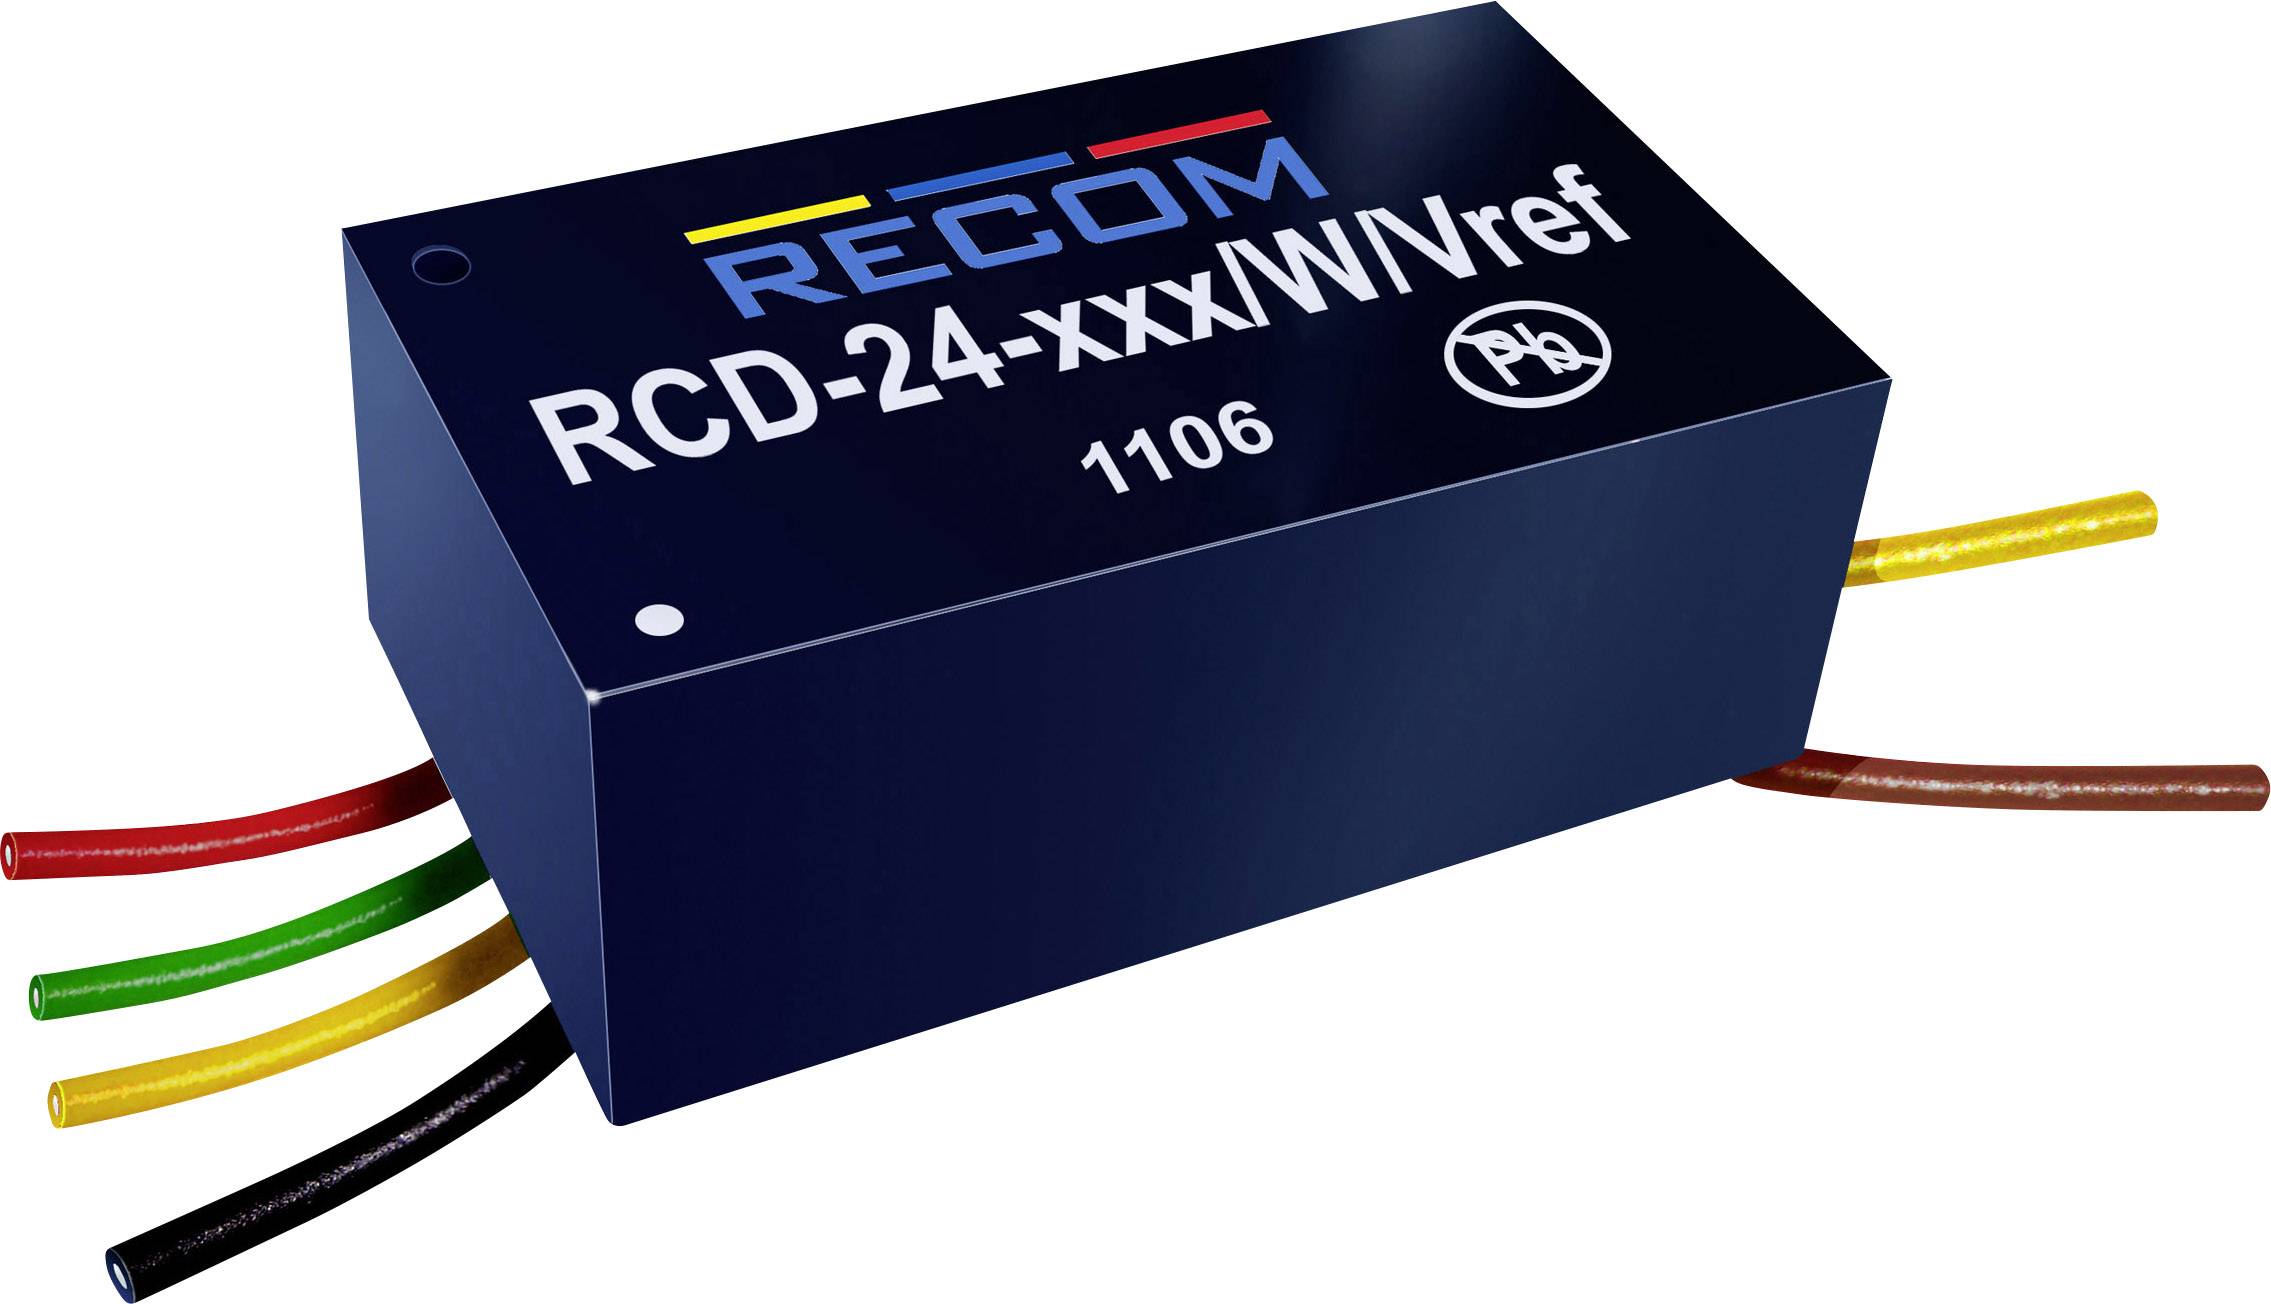 RECOM LED-Treiber 36 V/DC 700 mA Recom Lighting RCD-24-0.70/W/X3